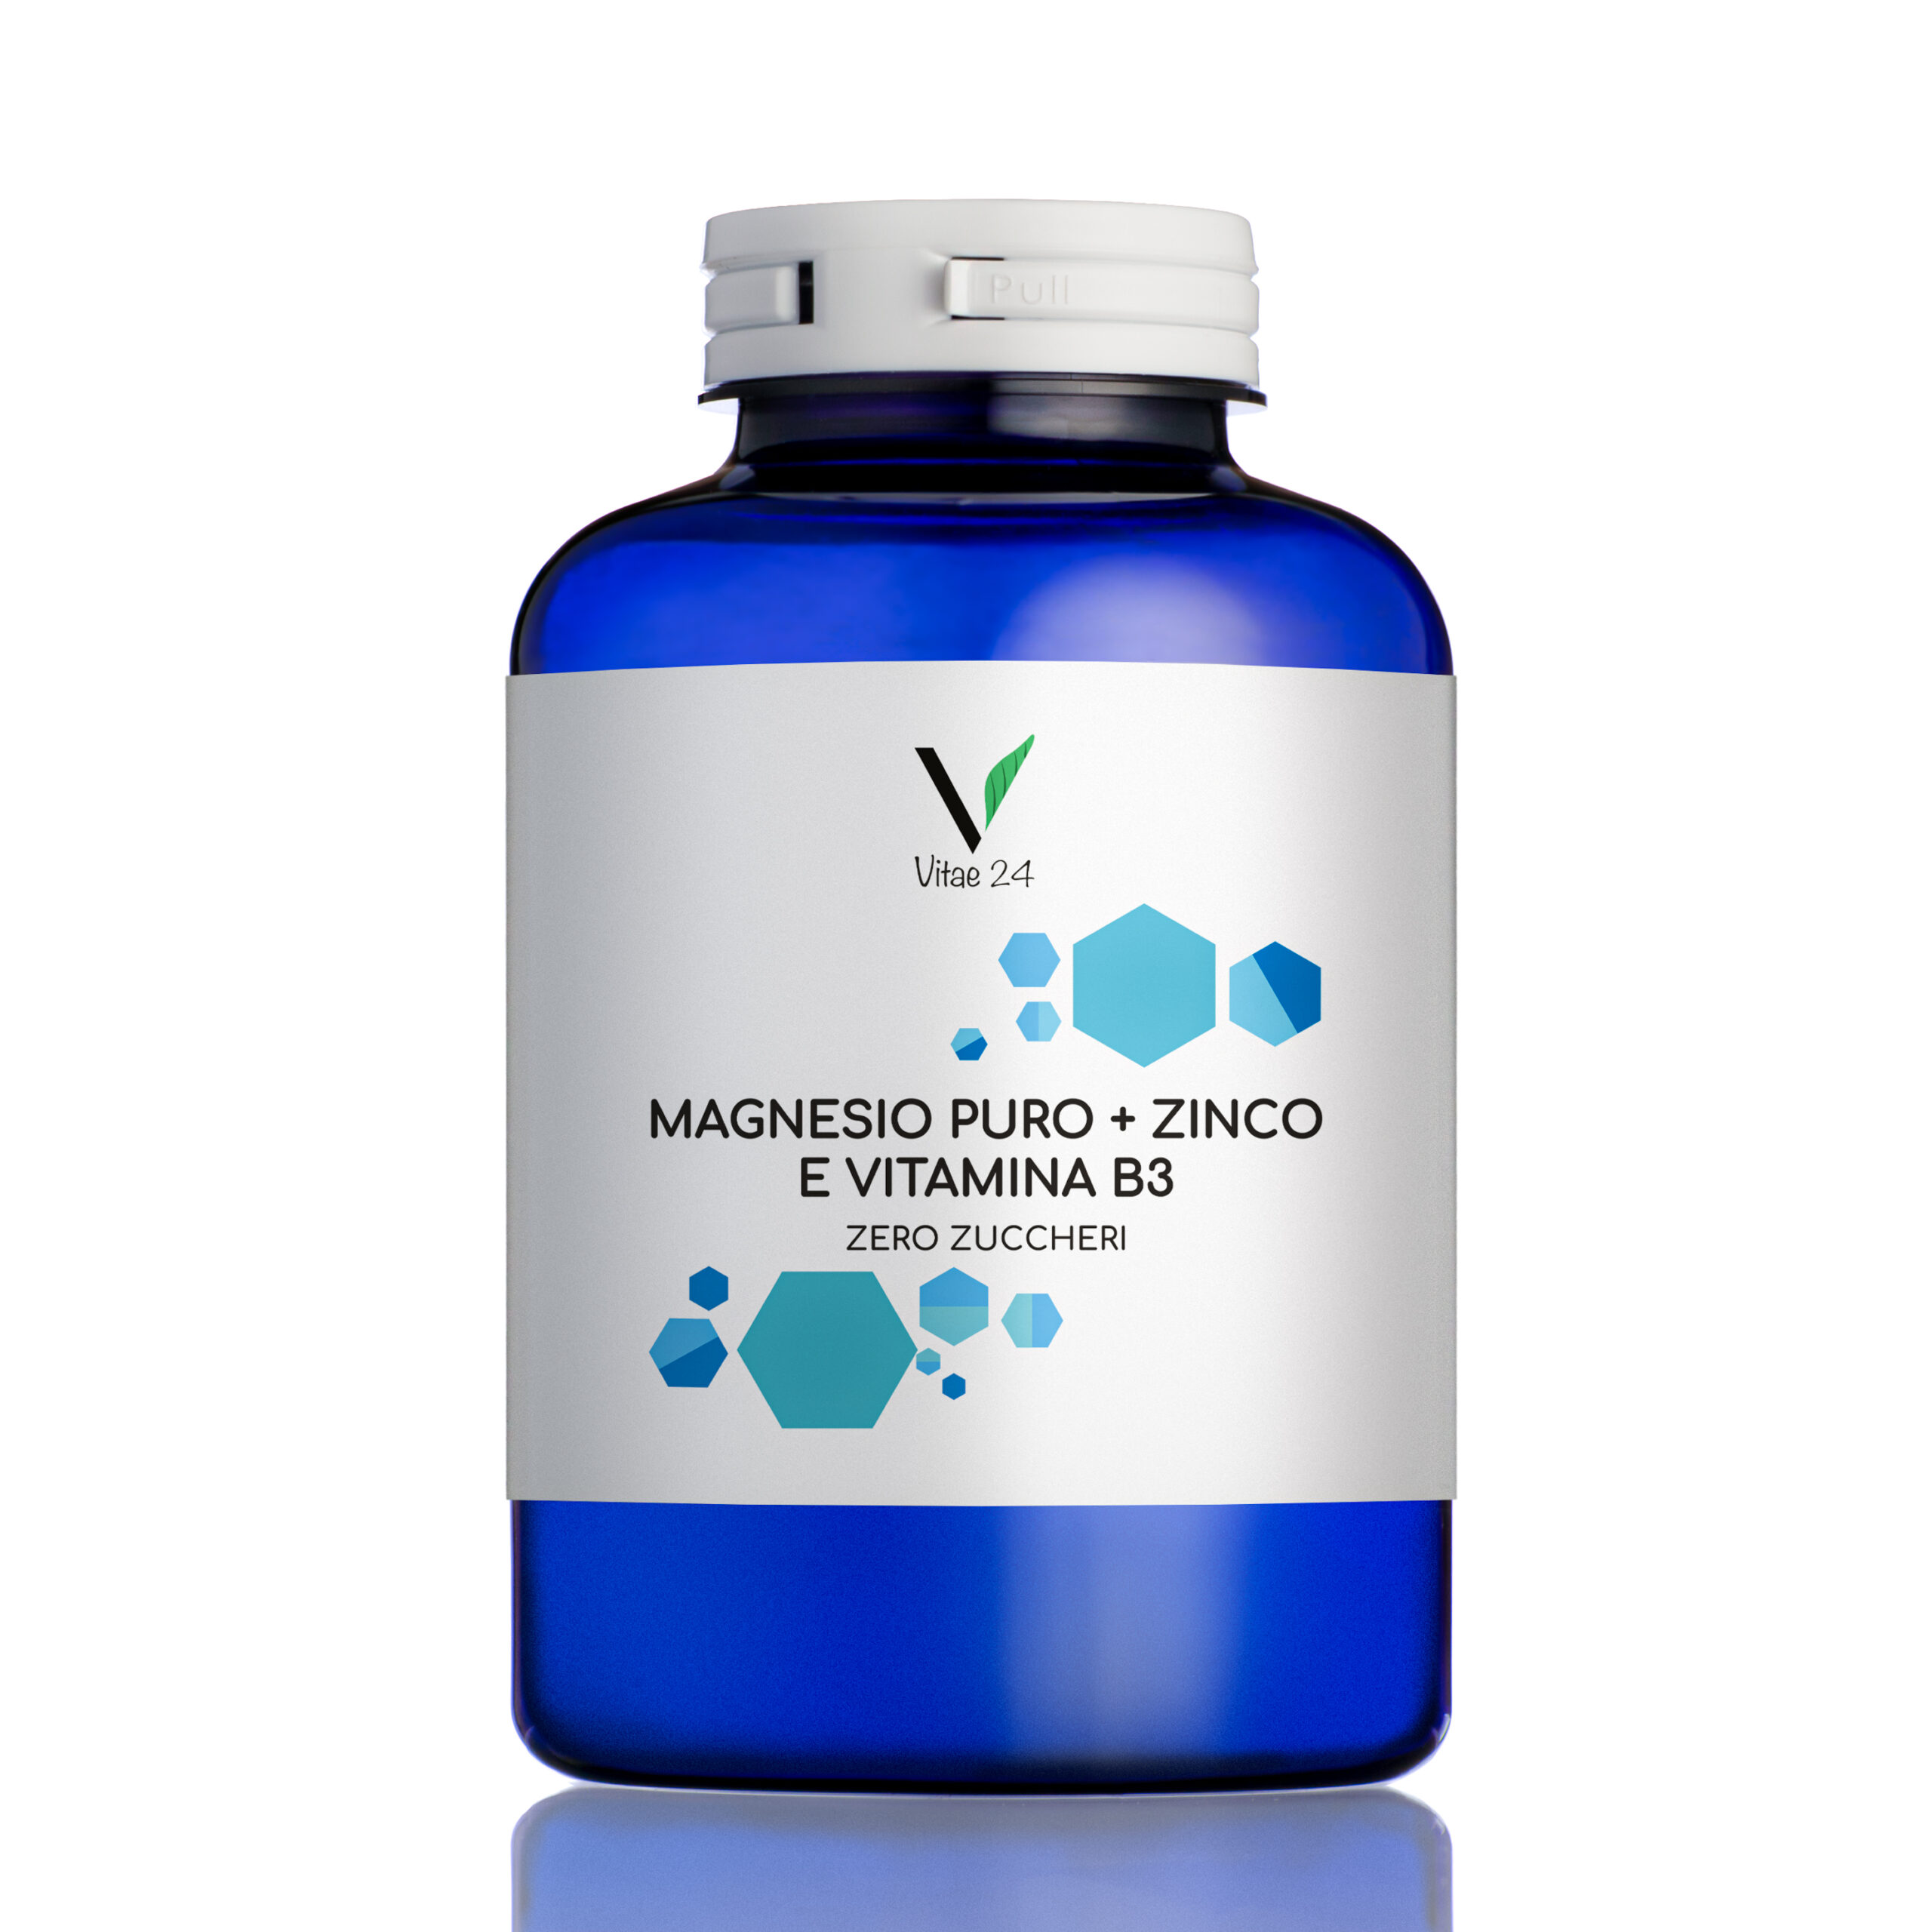 Magnesio Puro +Zinco e Vitamina B3 - Erboristeria Dr Colasanti